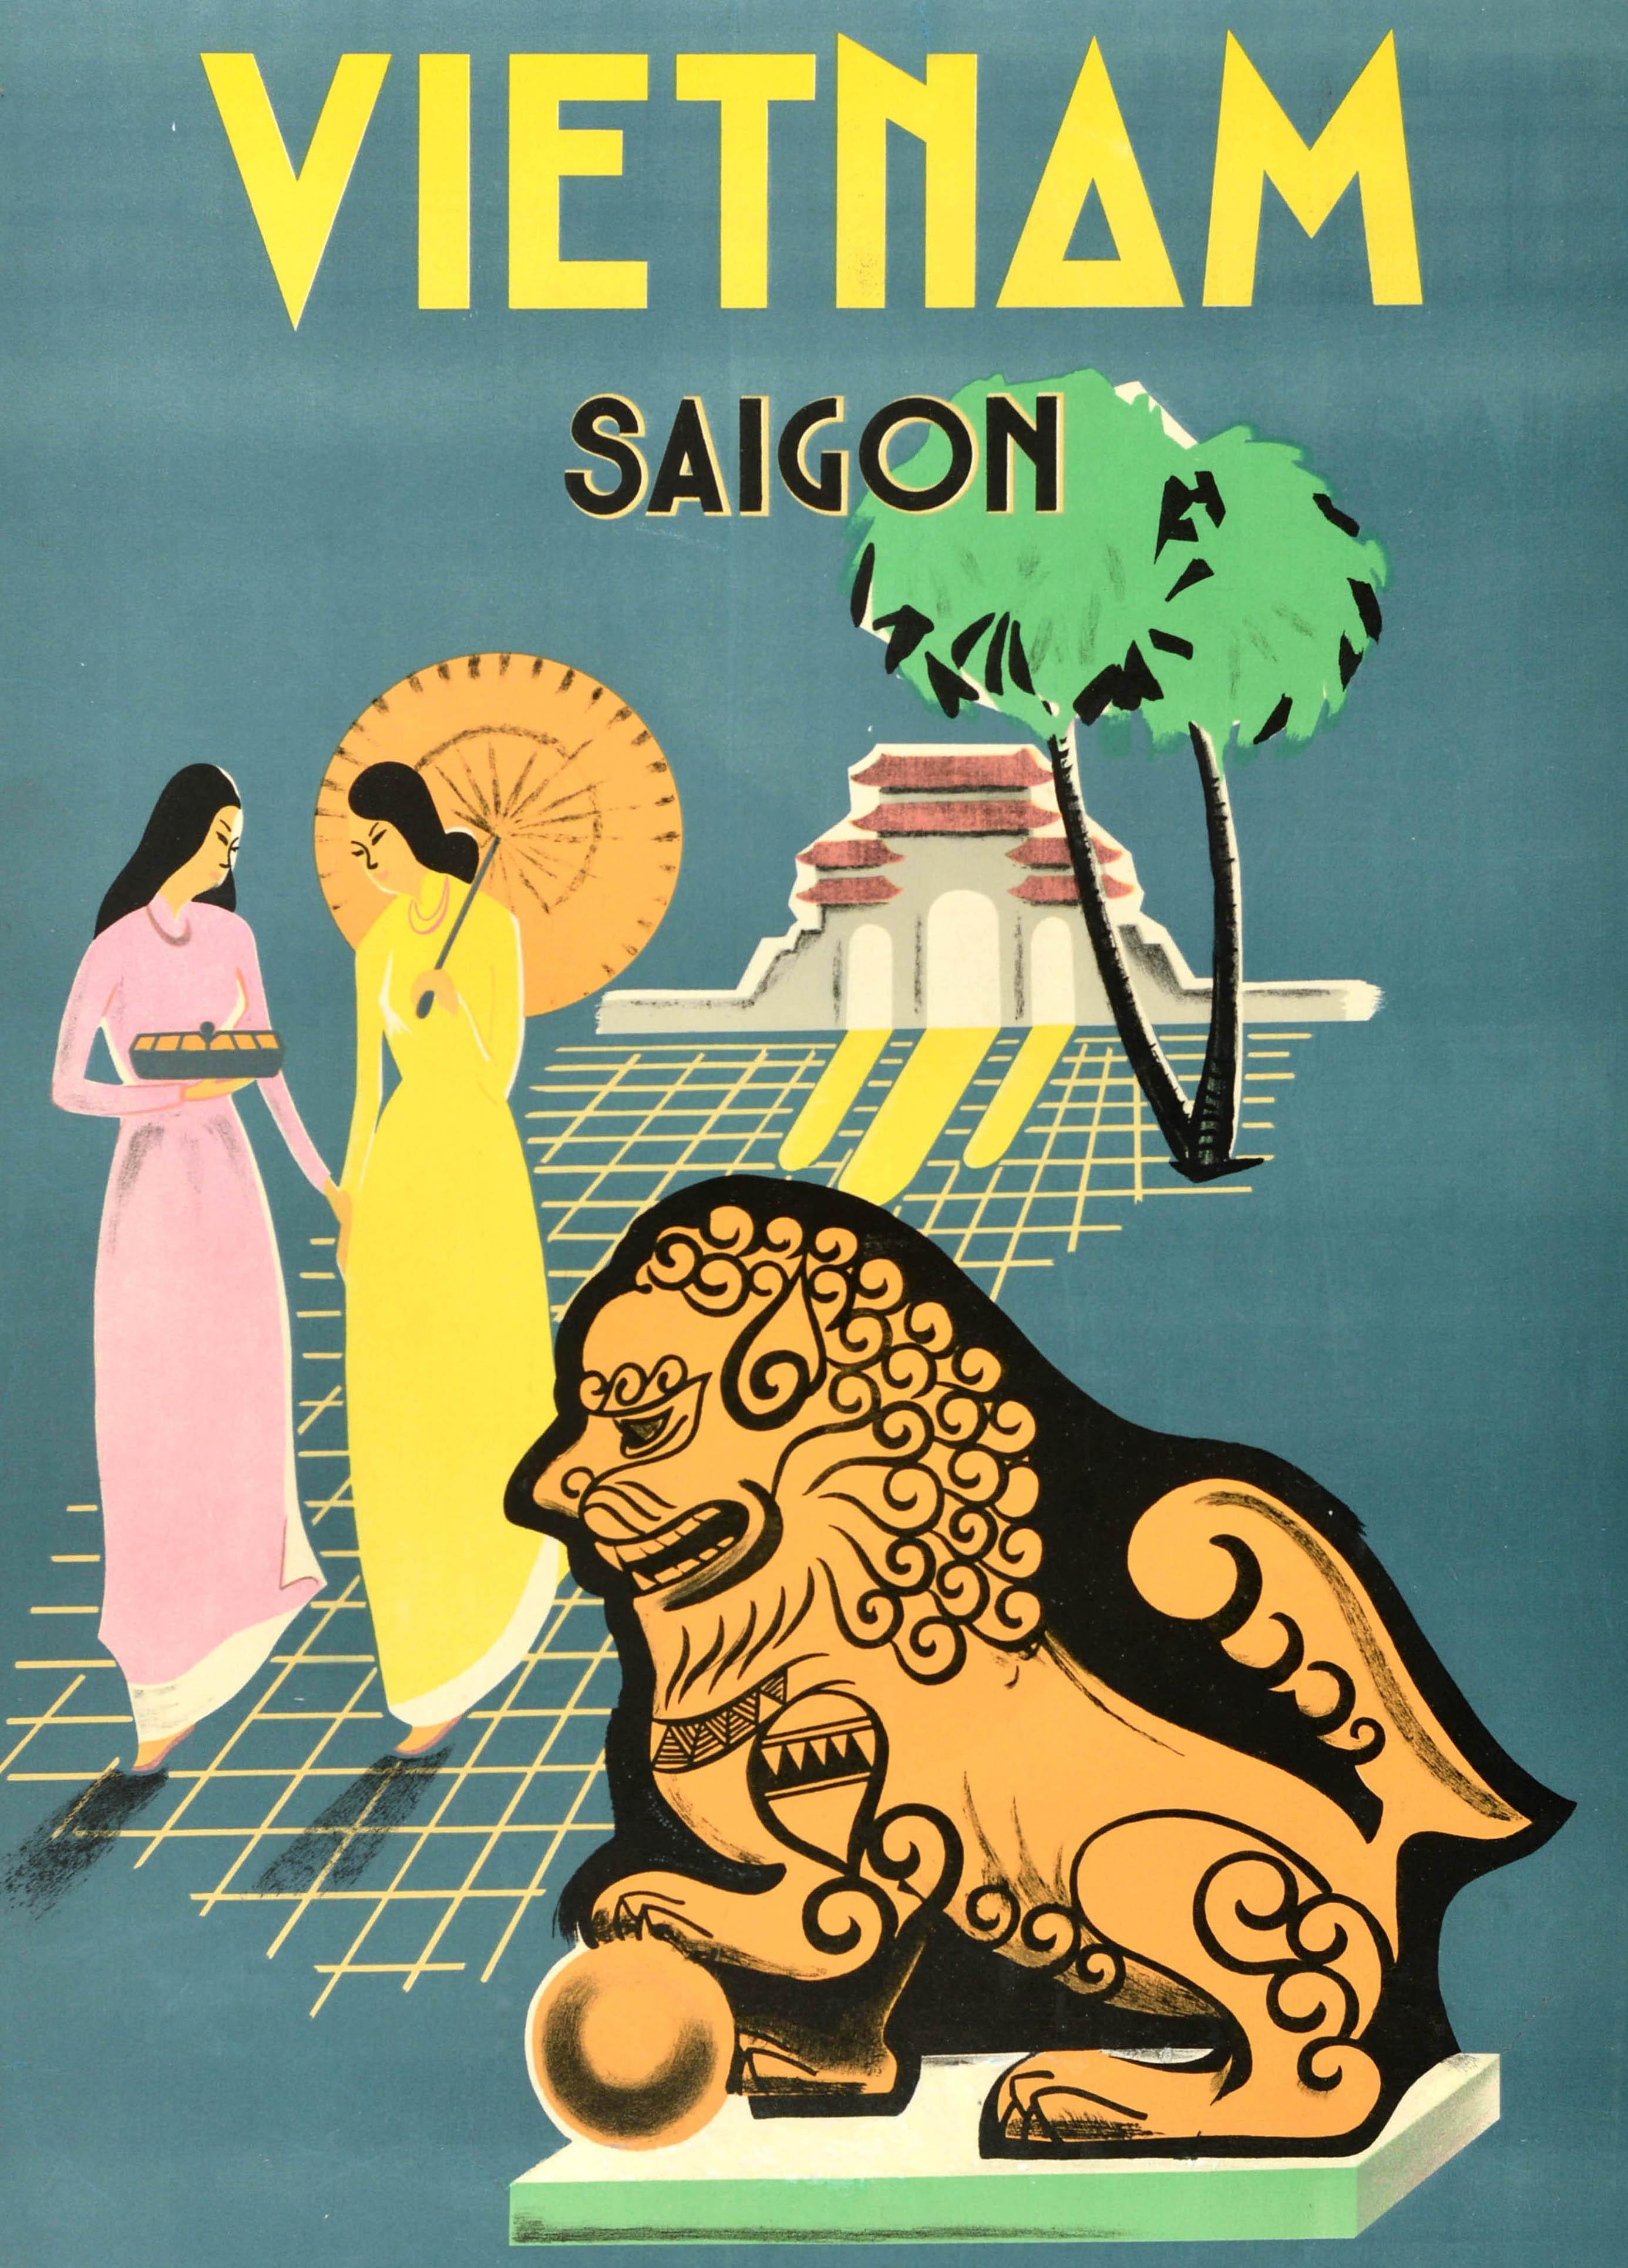 Original Vintage Asien Reiseplakat für Vietnam Saigon mit einem Bild von zwei Damen in traditionellen rosa und gelben Tunika Kleider, eine hält ein Tablett und die andere hält einen Sonnenschirm, zu Fuß auf einem gelben Gitter-Design mit einer